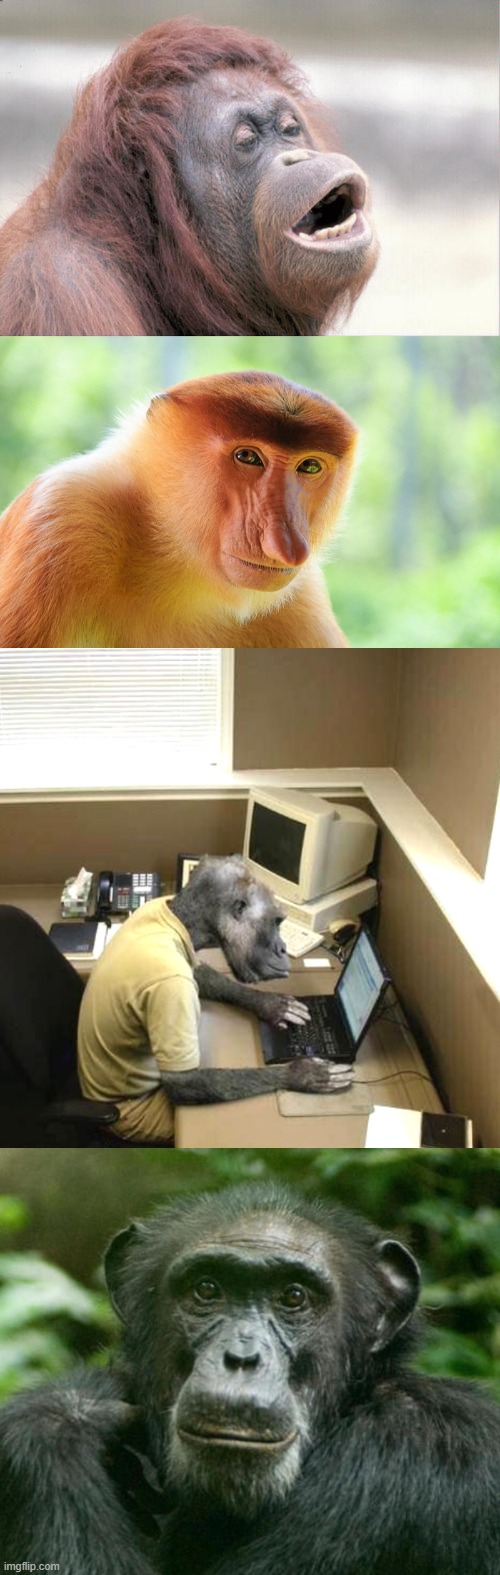 NFTs?!?!?!?!?!?!?!?! | image tagged in memes,monkey ooh,nosacz monkey,monkey business,nft | made w/ Imgflip meme maker